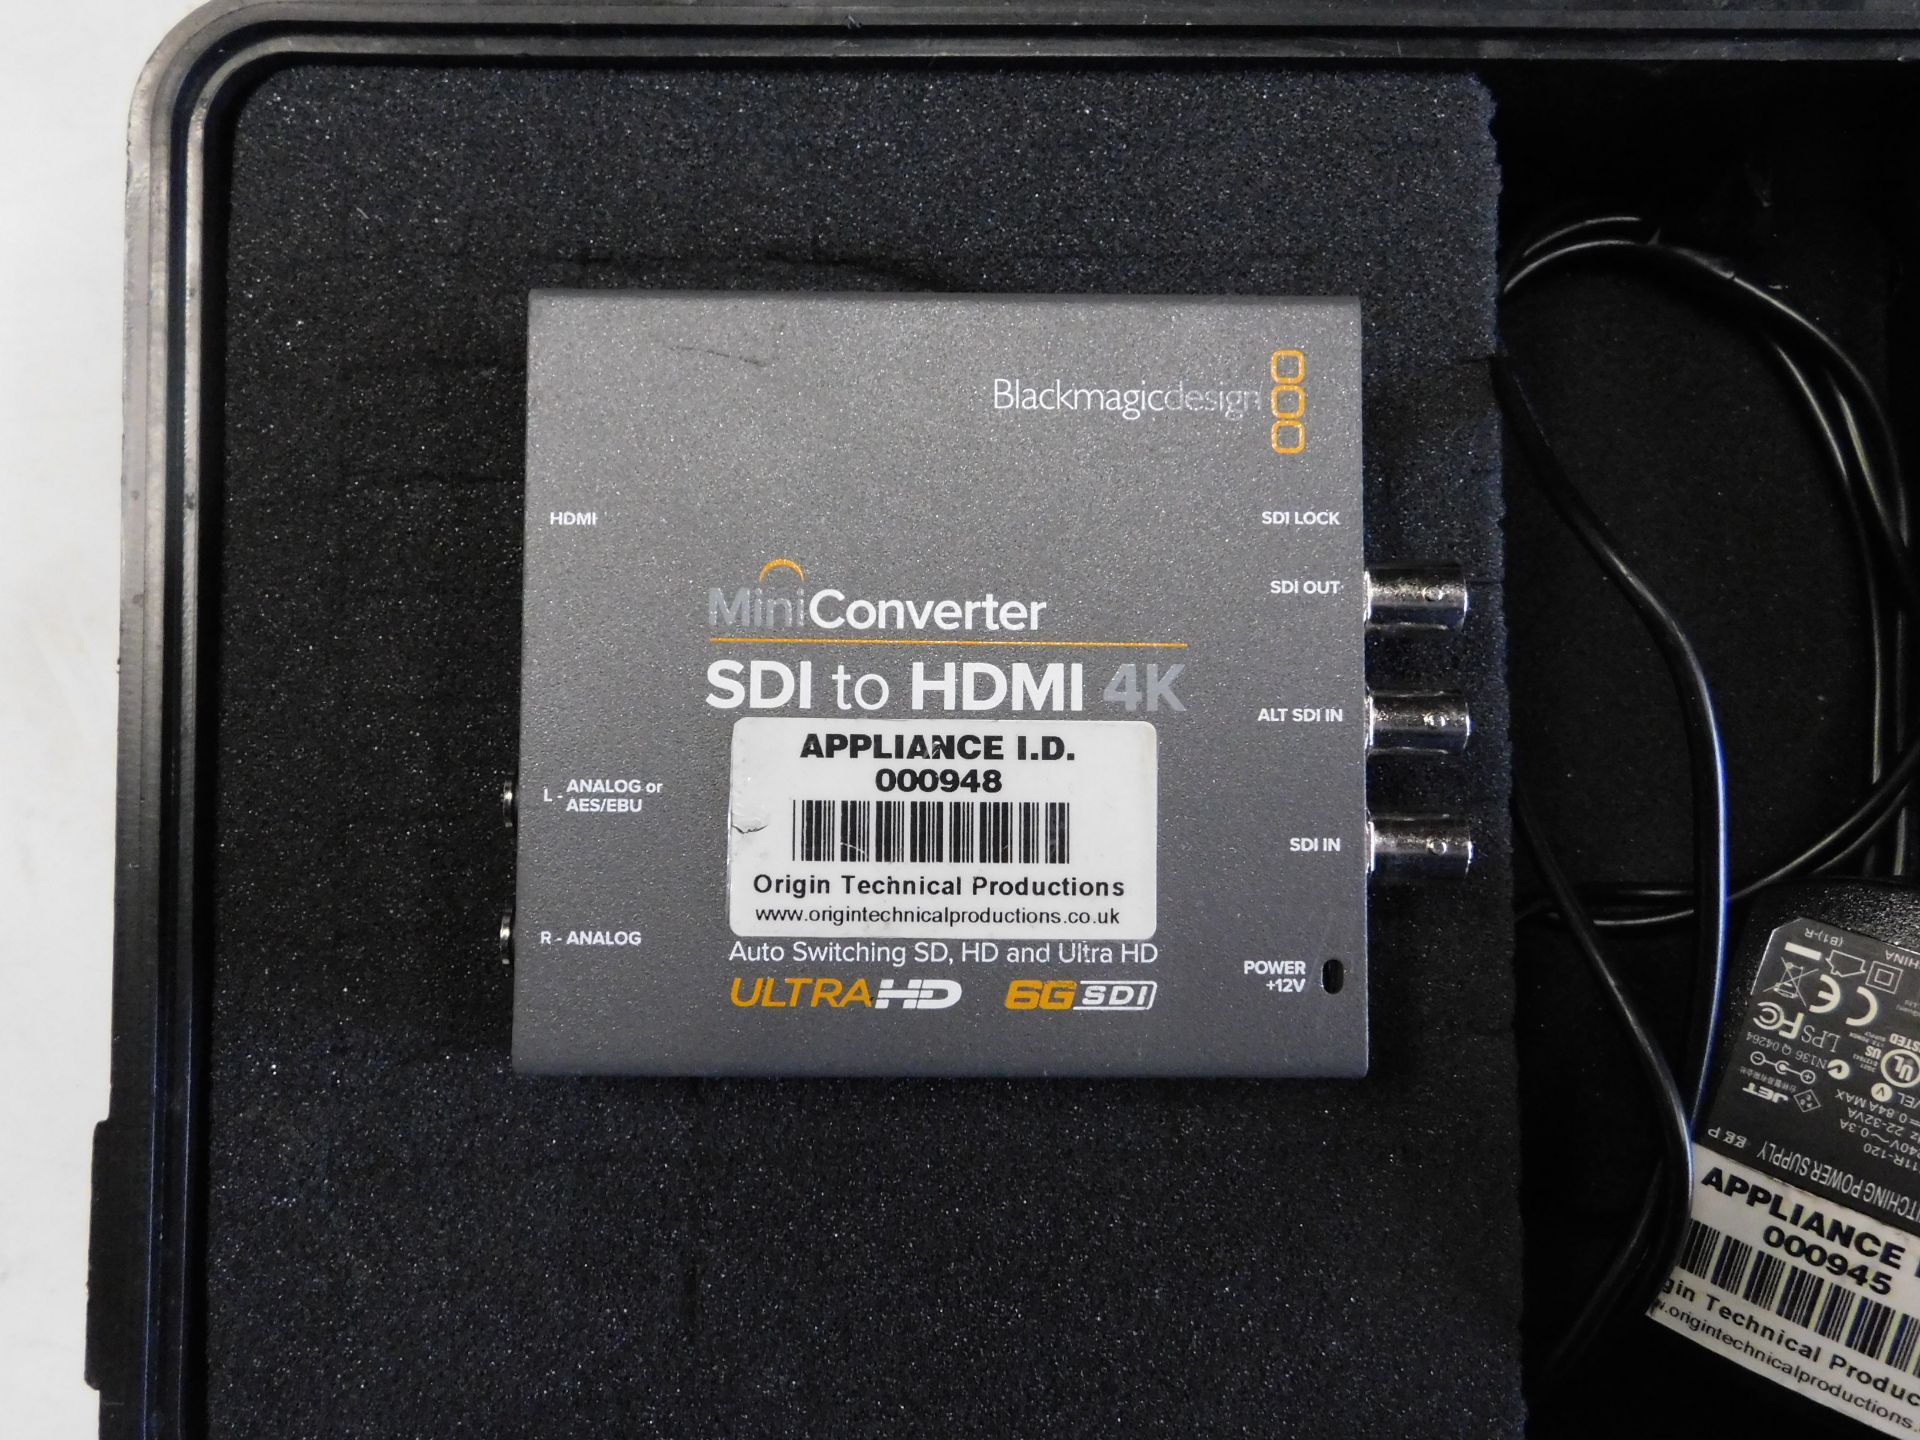 2 BlackMagicDesign Mini Converter SDI to HDMI Kits & 2 BlackMagicDesign Mini Converter HDMI TO SDI - Image 5 of 10